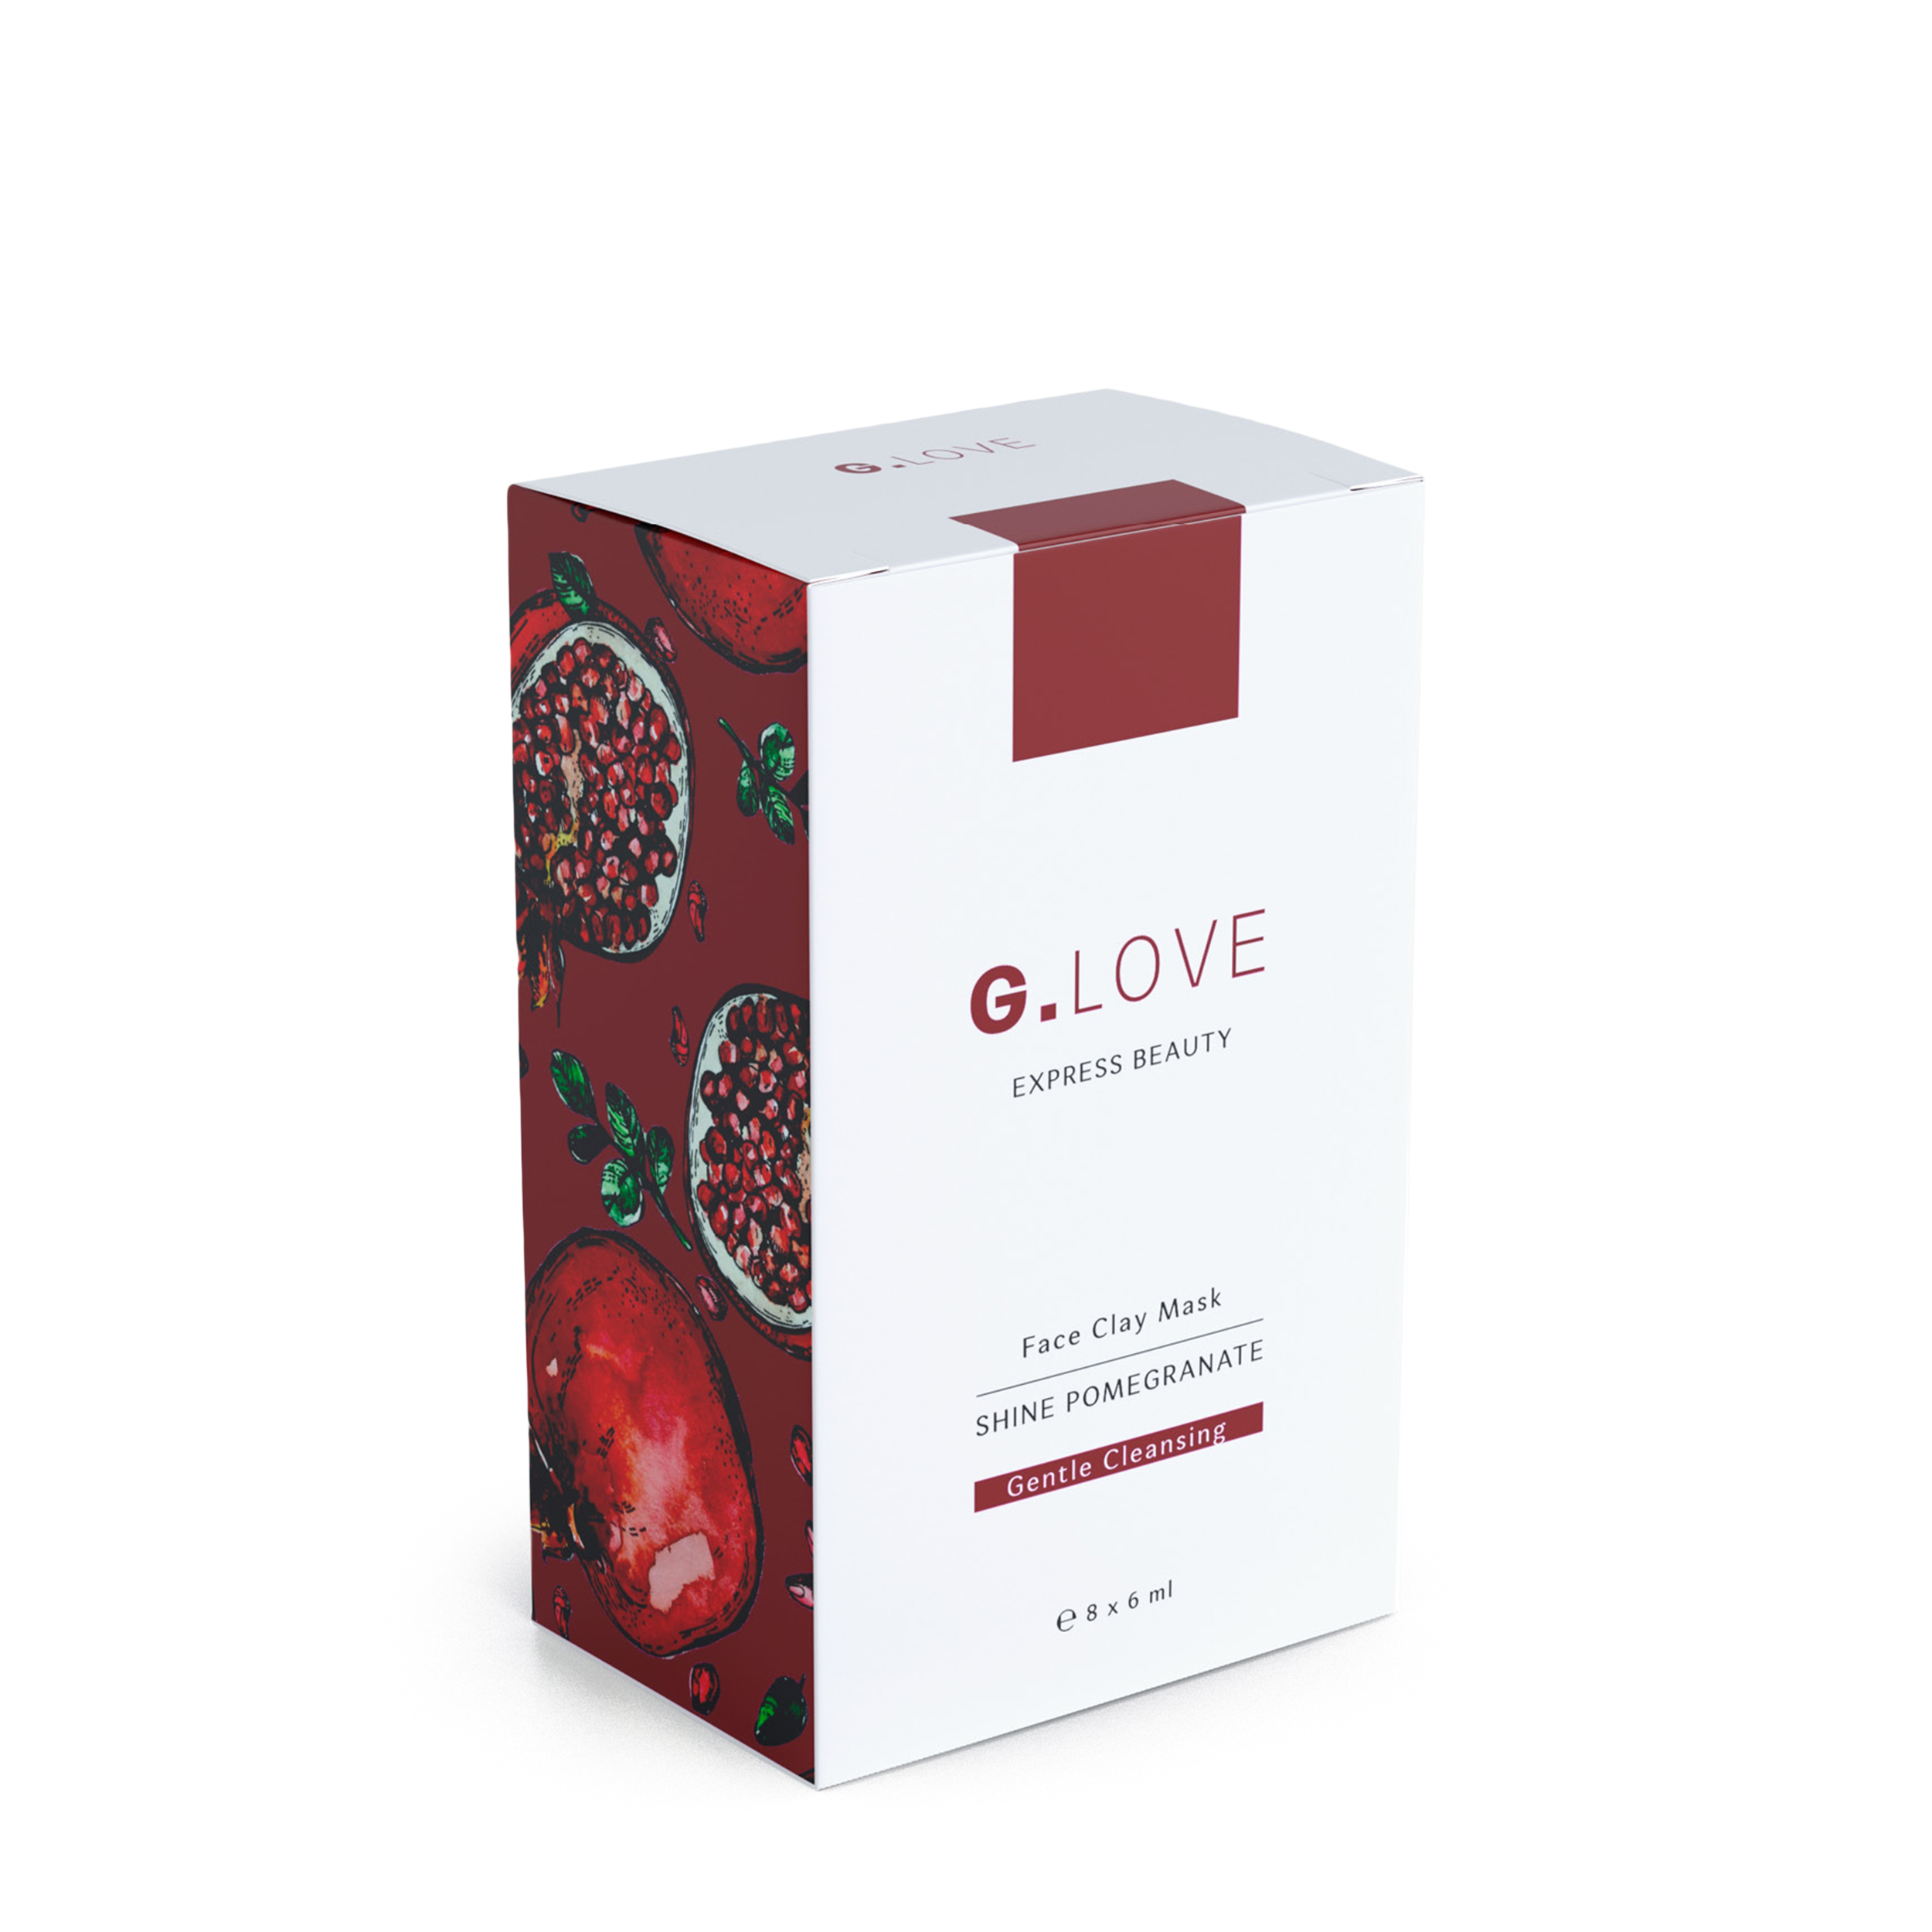 G.LOVE G.LOVE Глиняная маска для лица Shine Pomegranate 8x6 мл